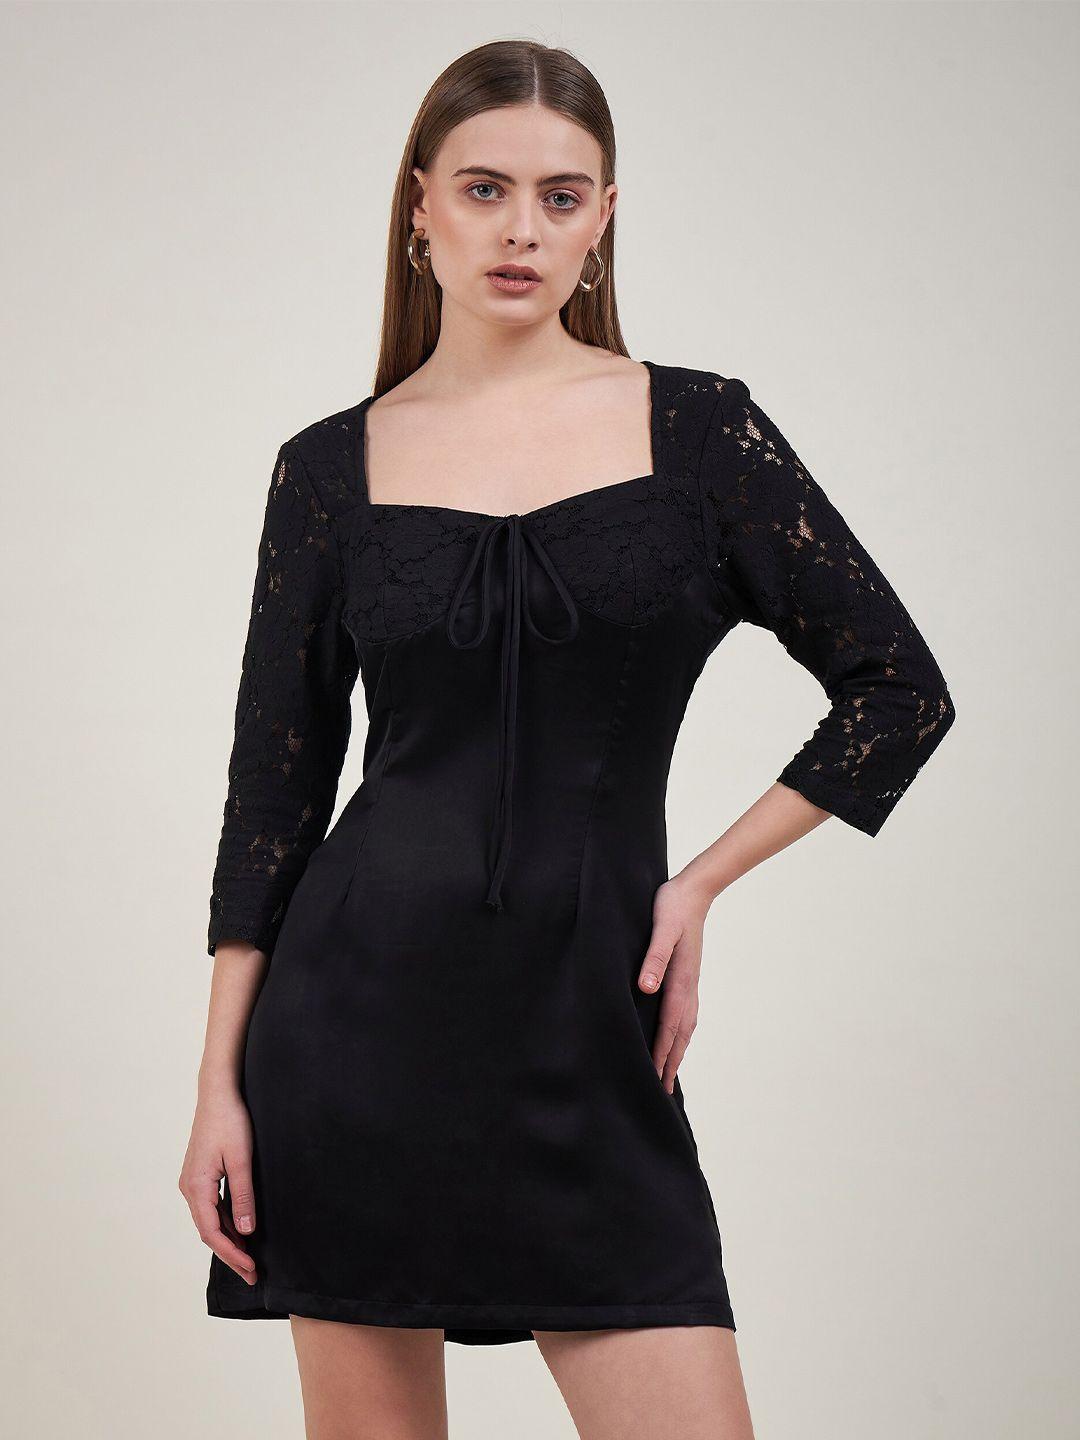 delan black & black satin fit & flare mini dress